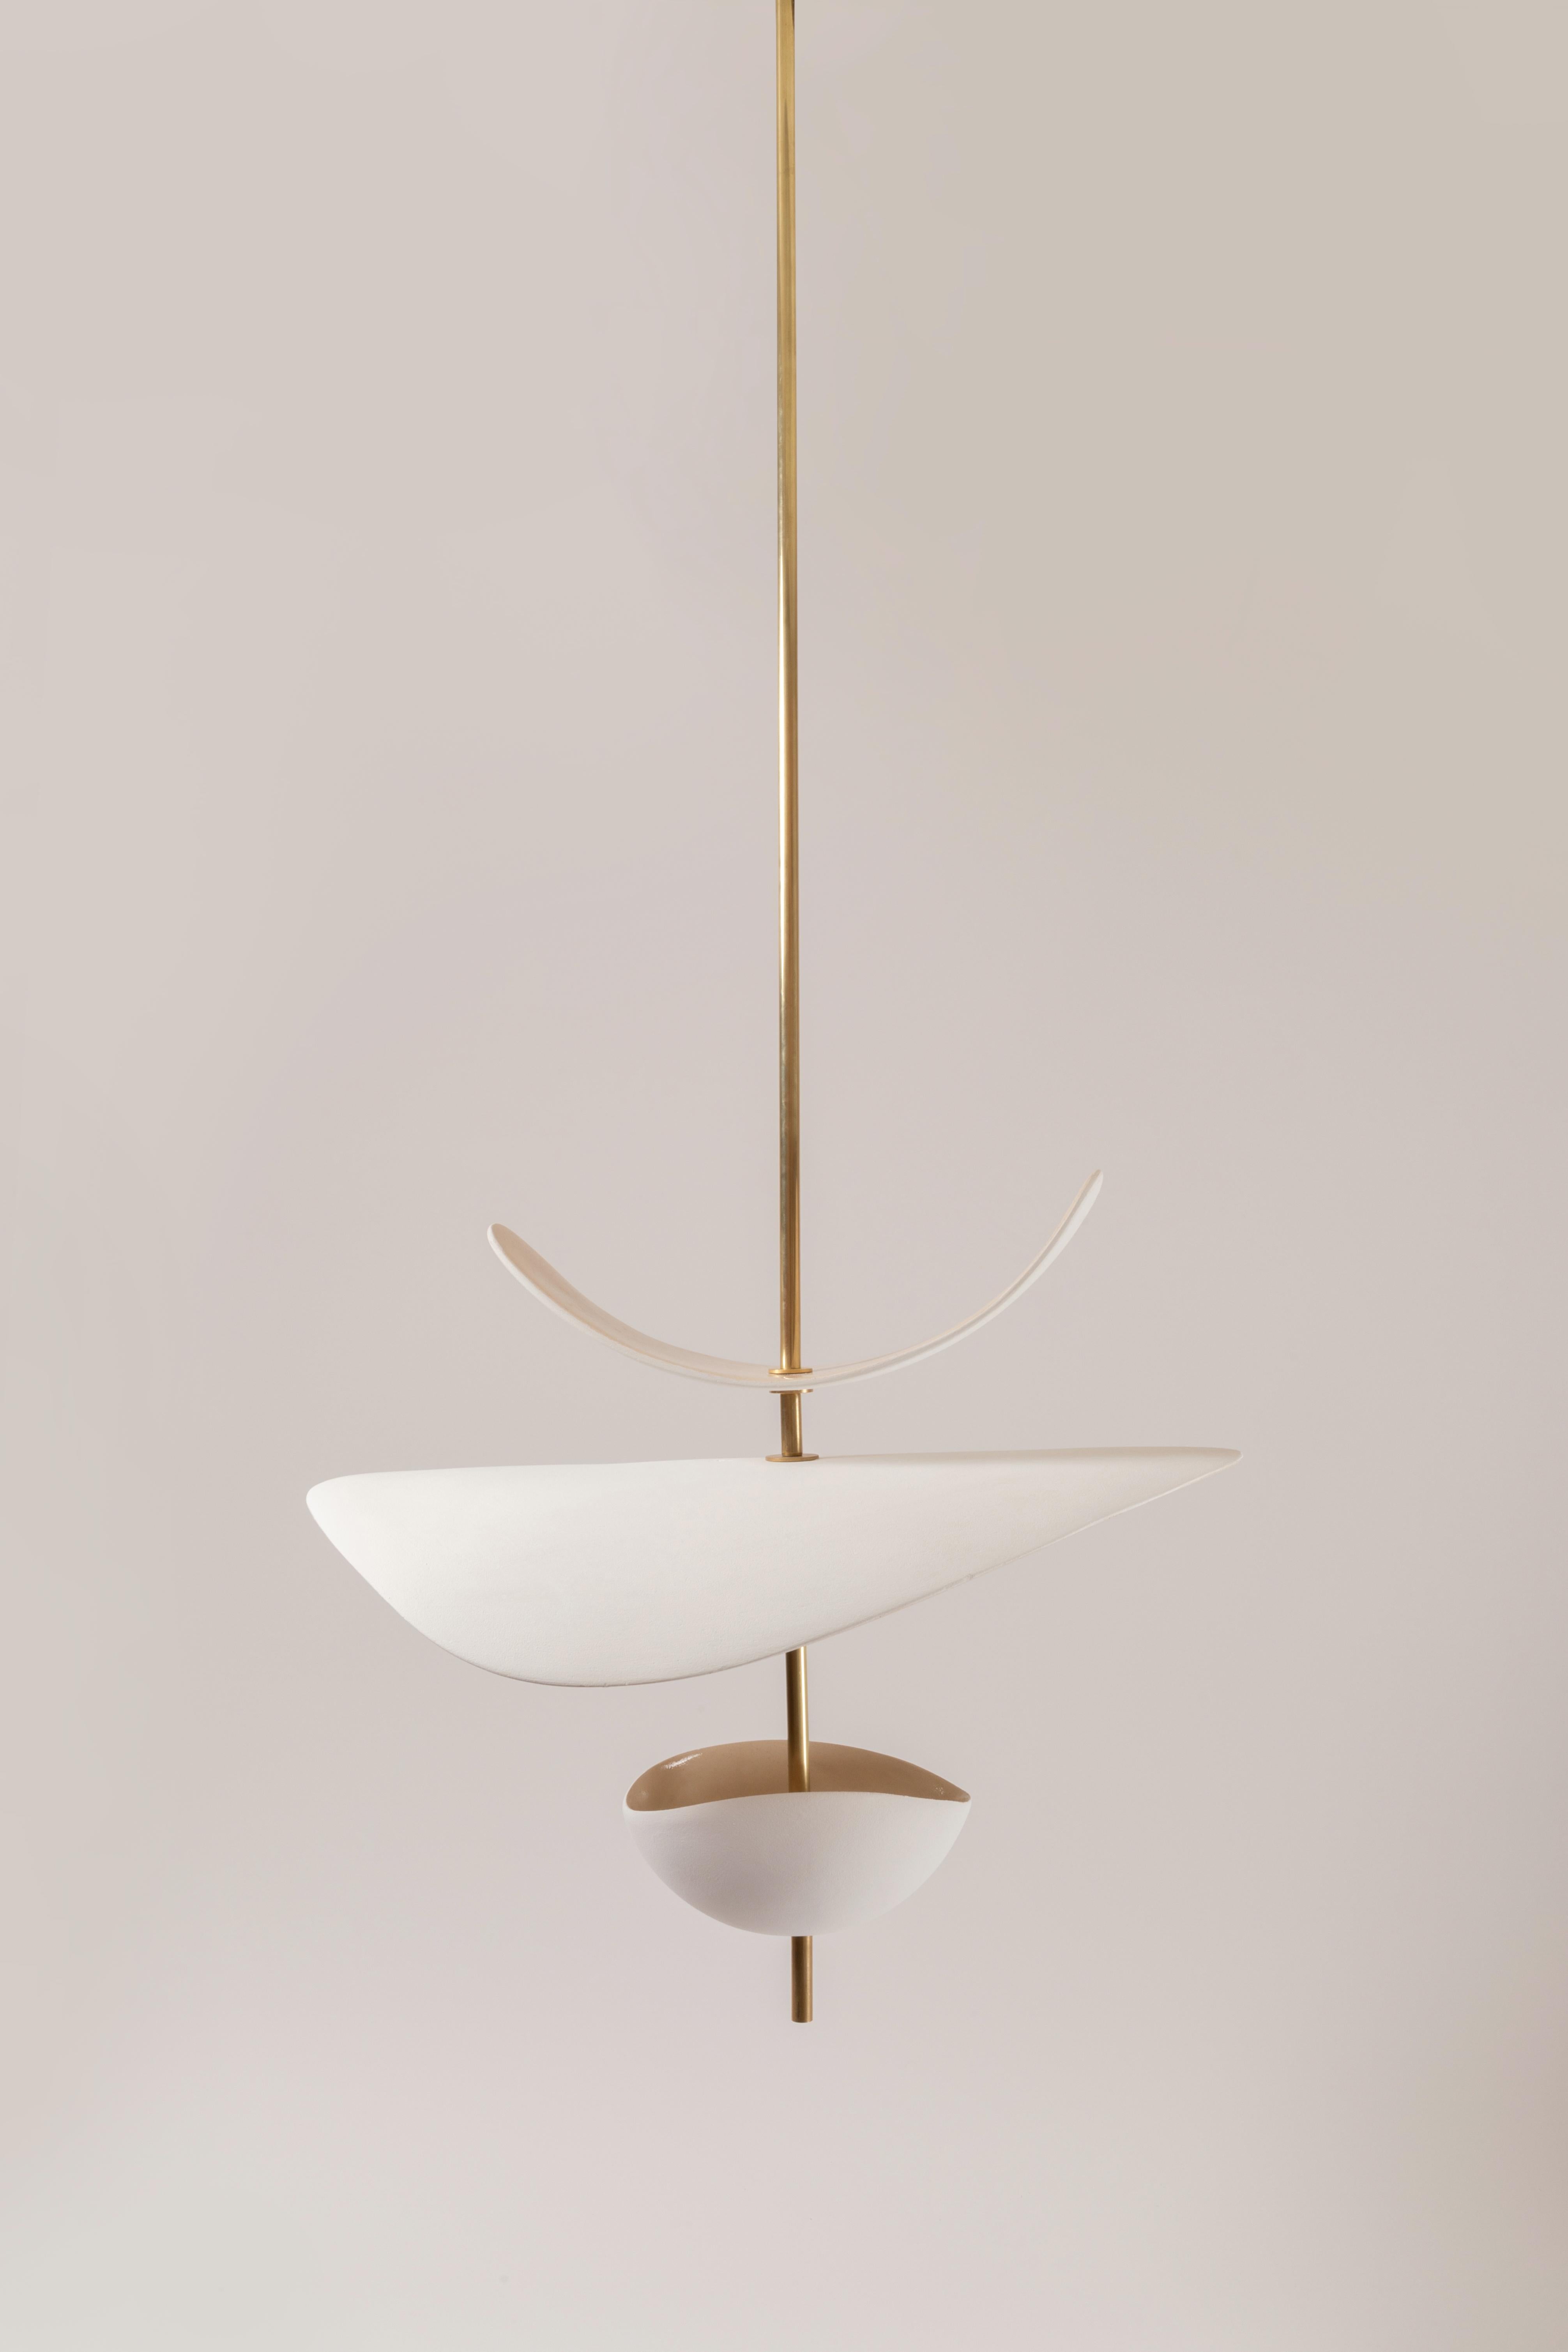 French Antigone XL Pendant Lamp by Elsa Foulon